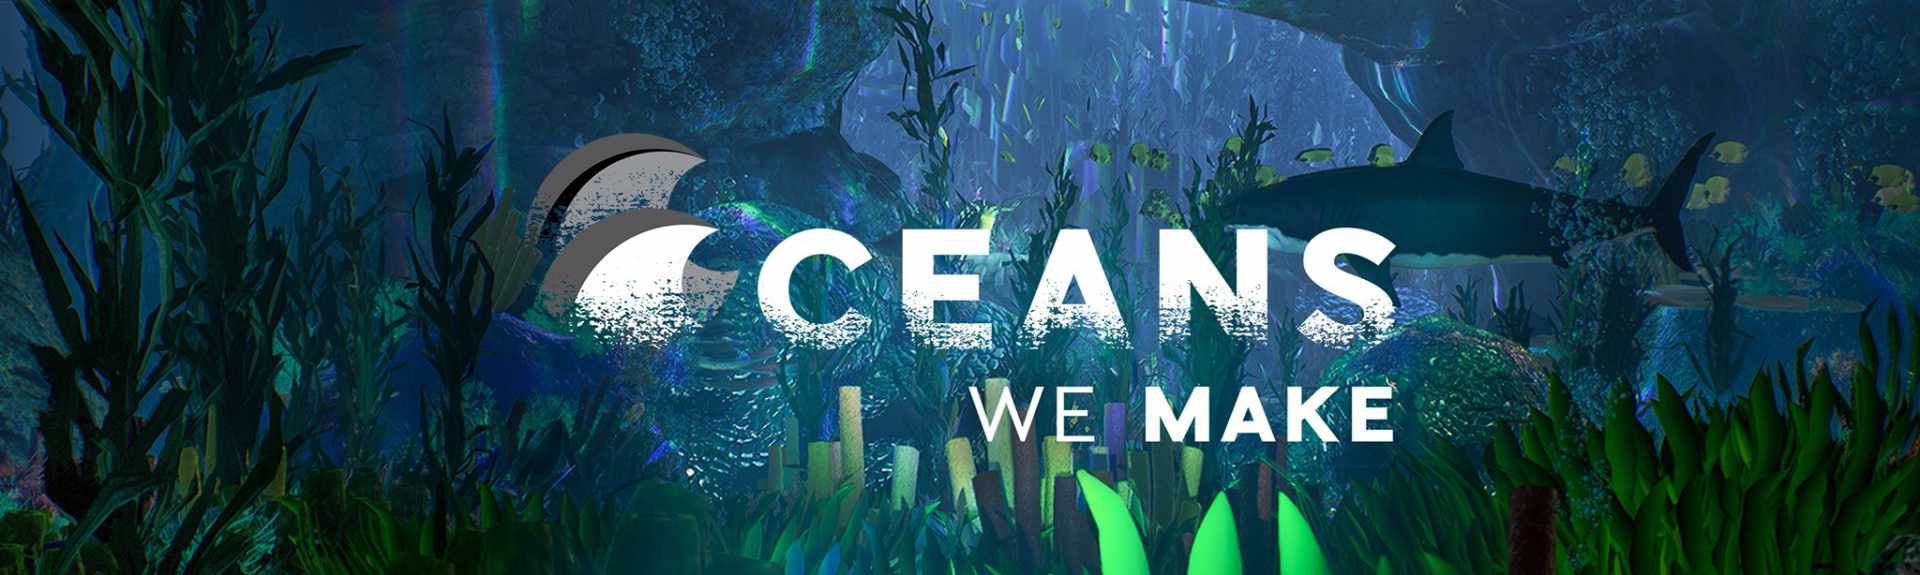 Oceans We Make